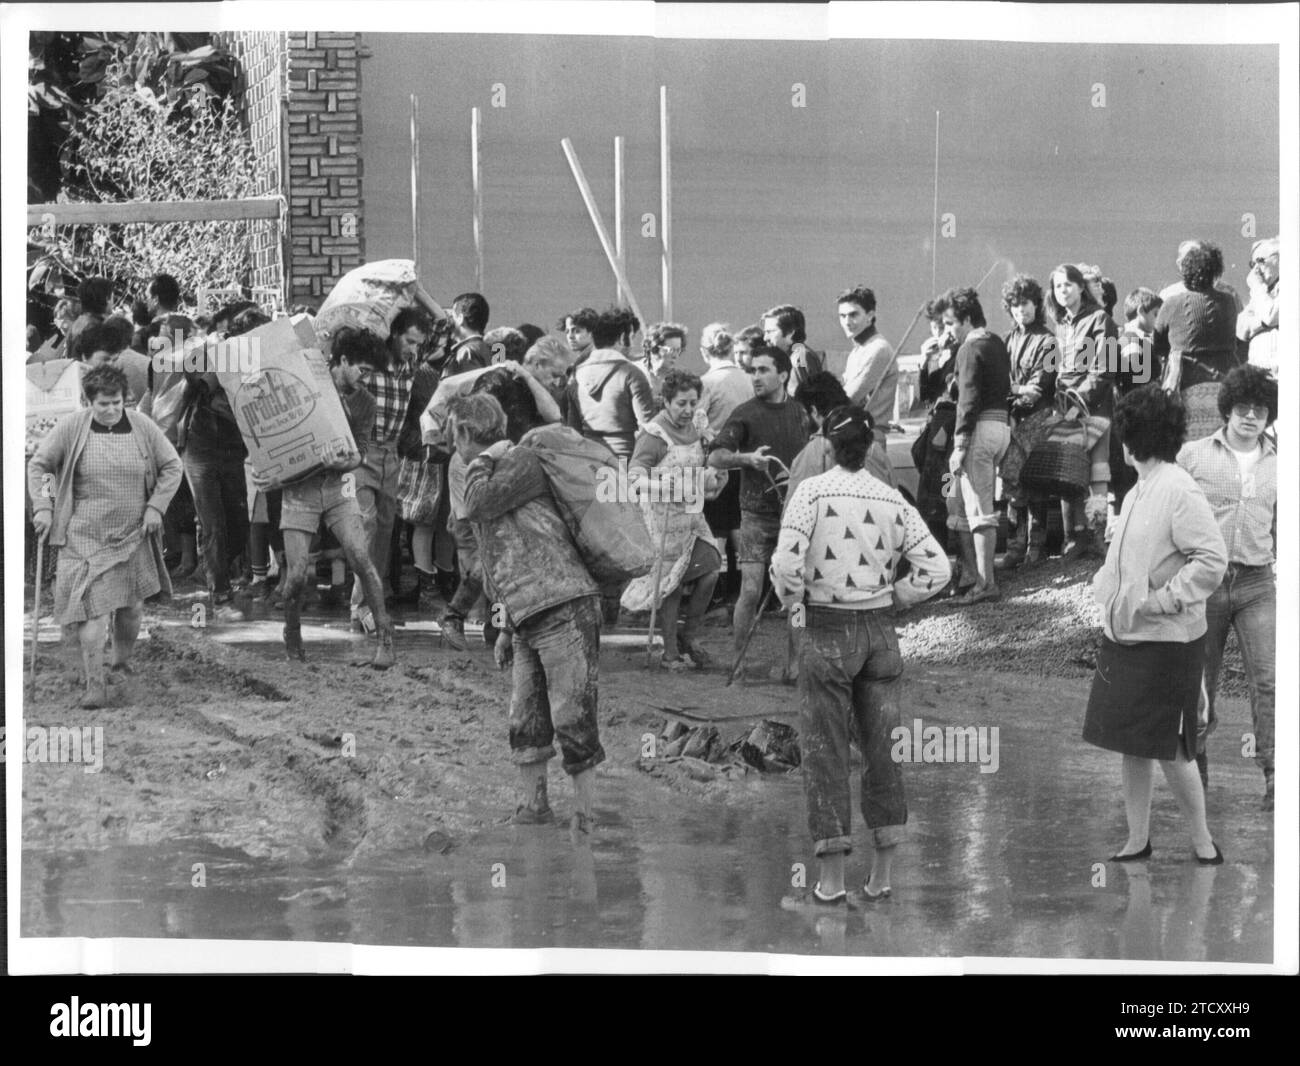 Floods in Valencia in October 1982: Alcira. Credit: Album / Archivo ABC / José García Stock Photo